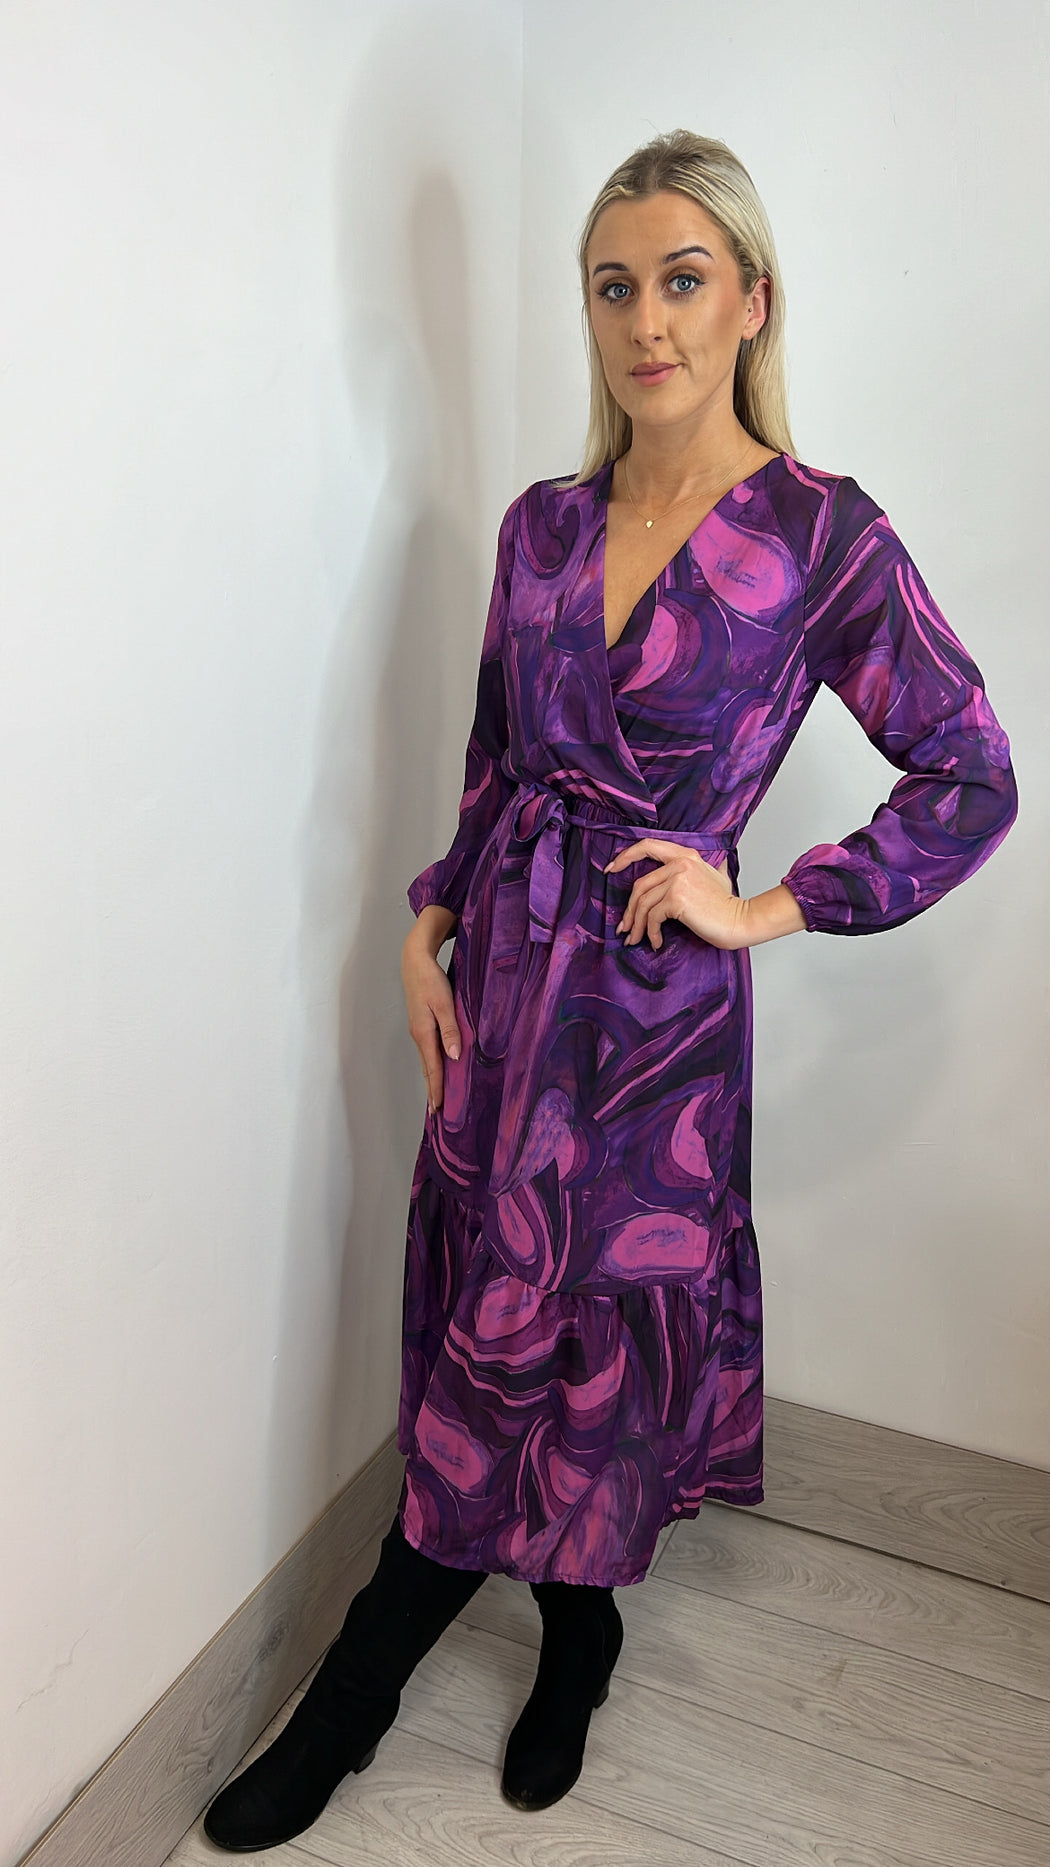 Purple Boho Midi Dress (no belt)